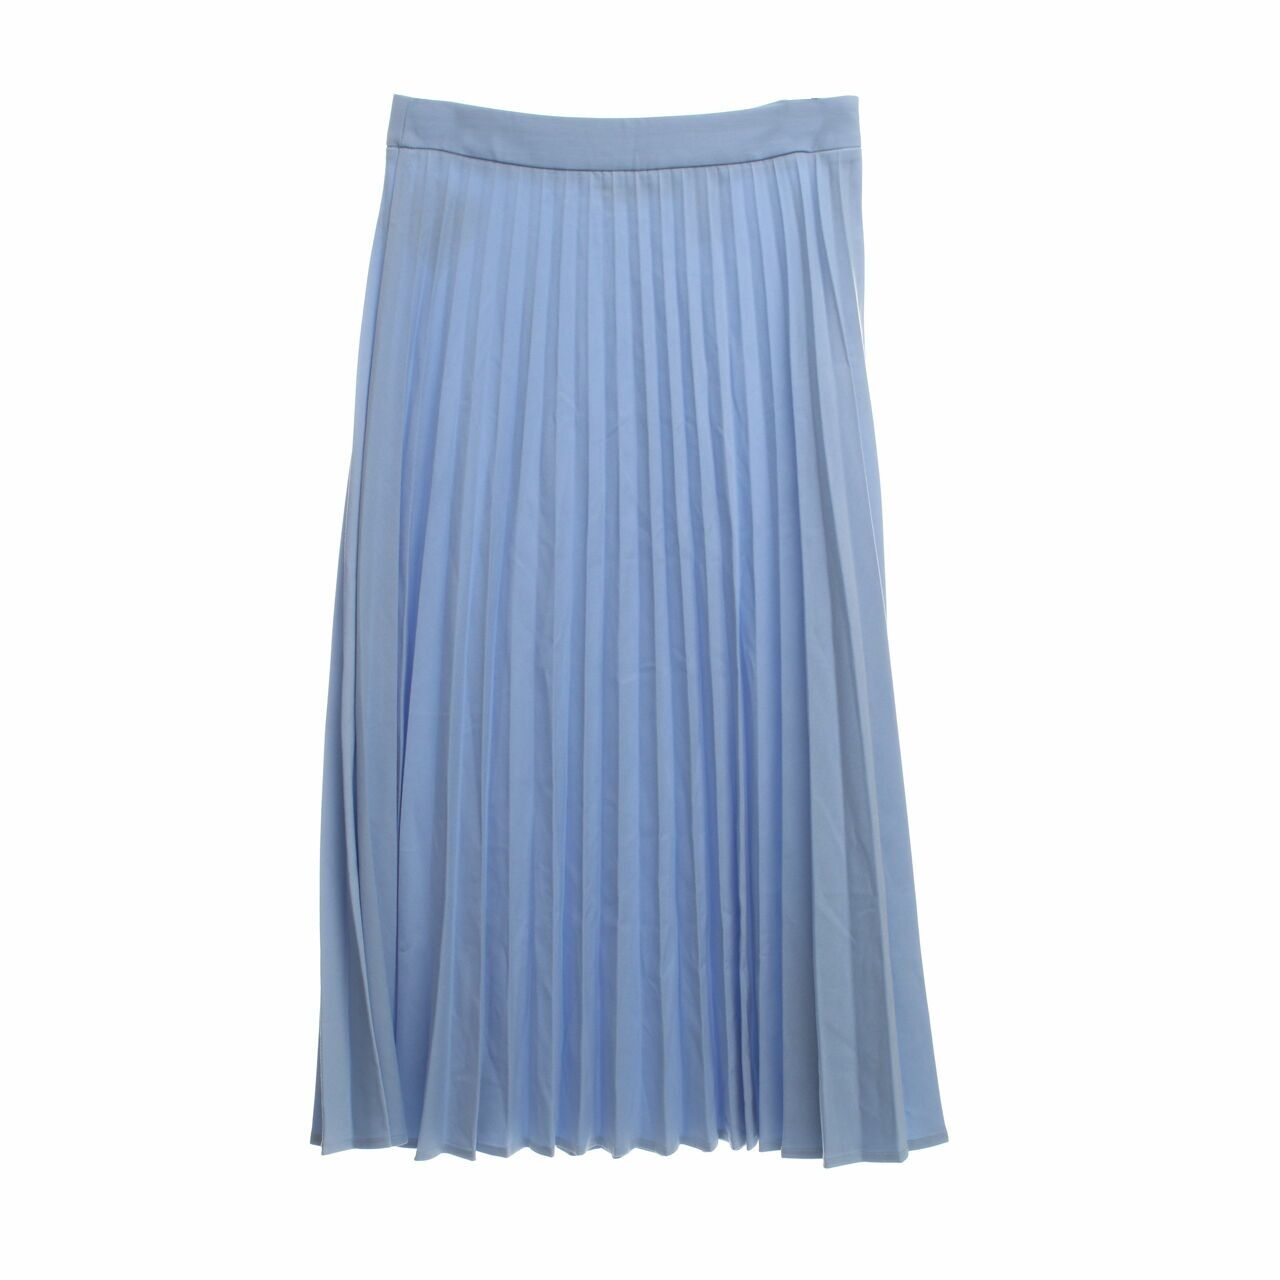 Alowalo Light Blue Pleated Midi Skirt